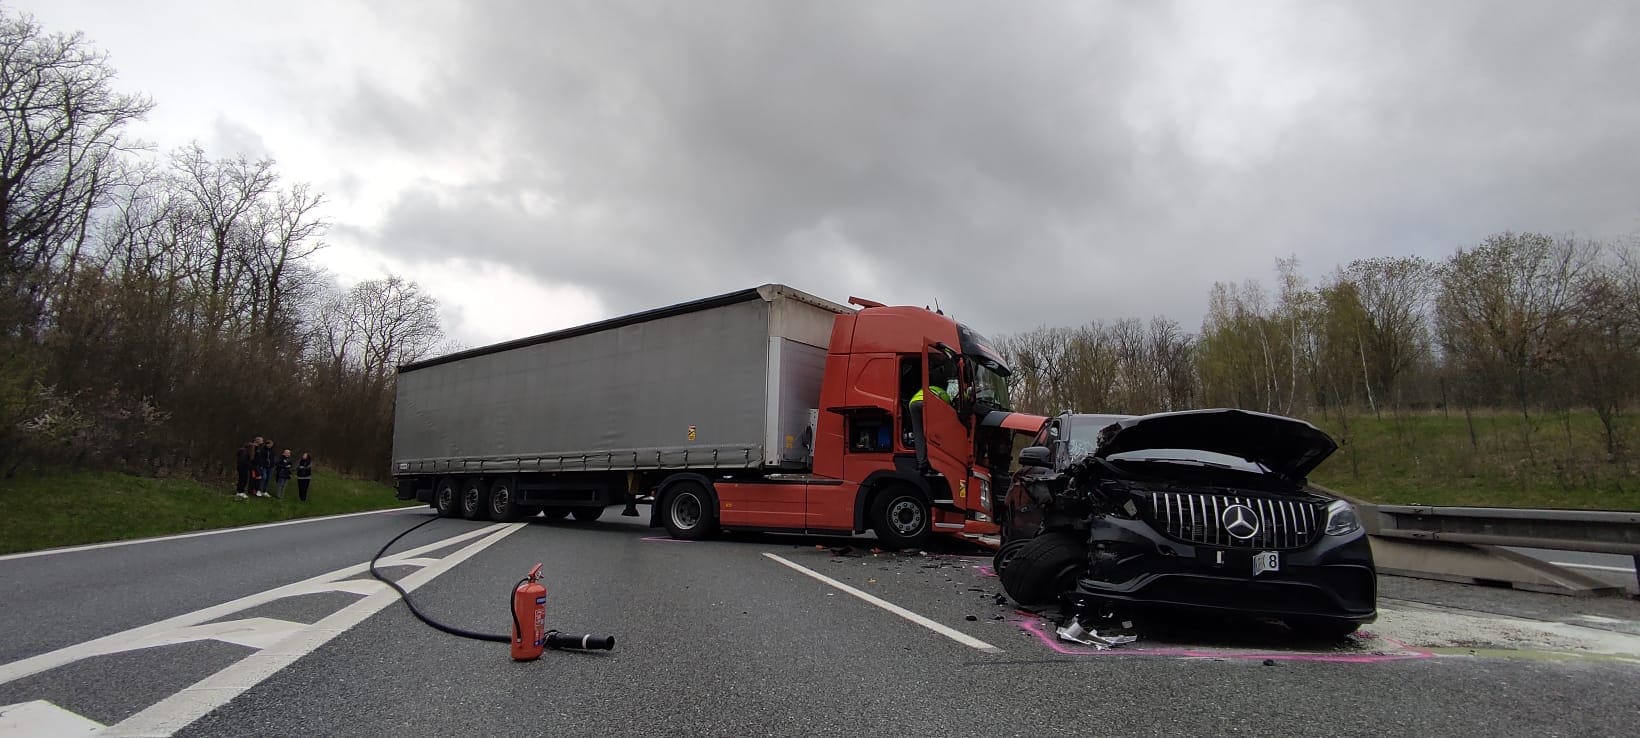 AMG Mercedes kamion baleset csehország rendőrség